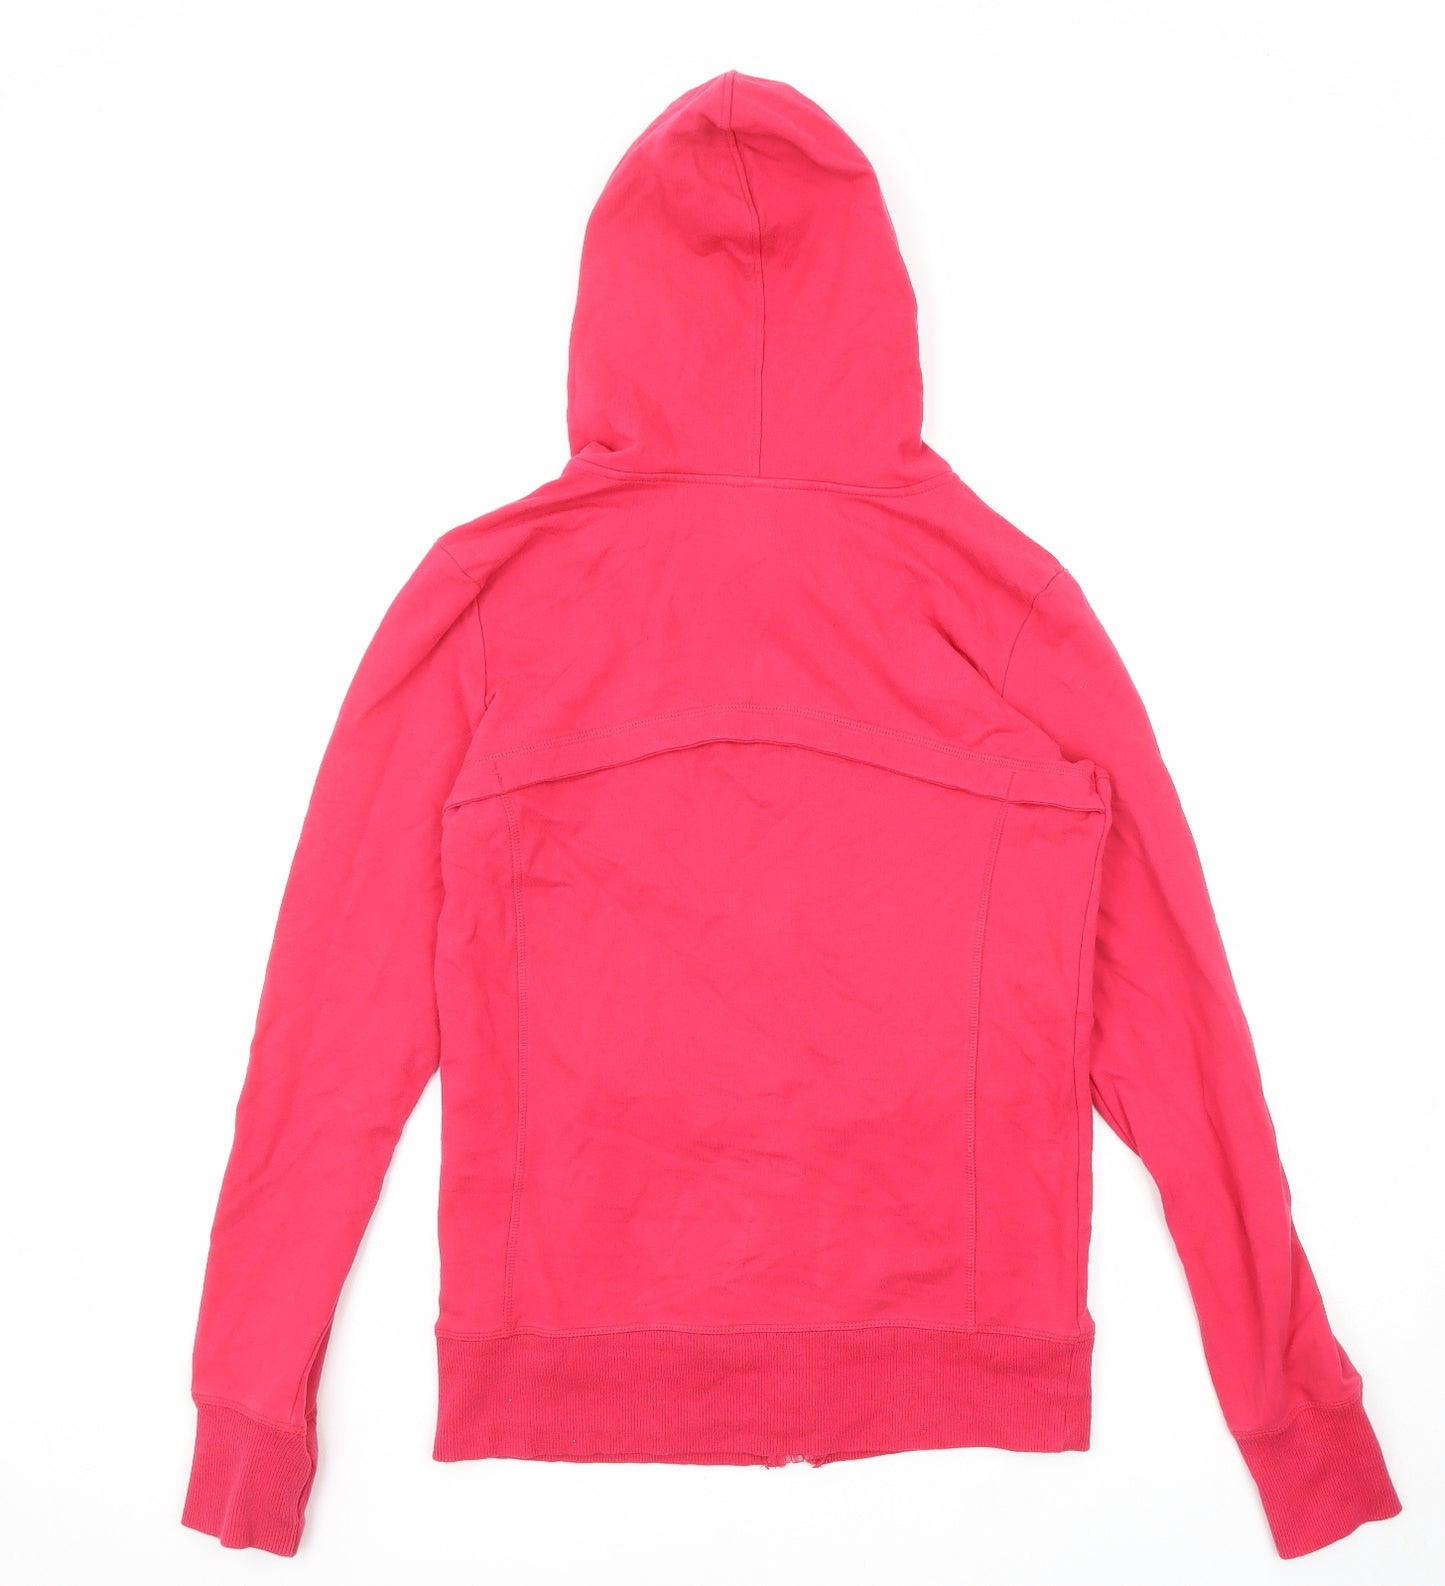 NEXT Womens Pink Cotton Full Zip Hoodie Size 12 Zip